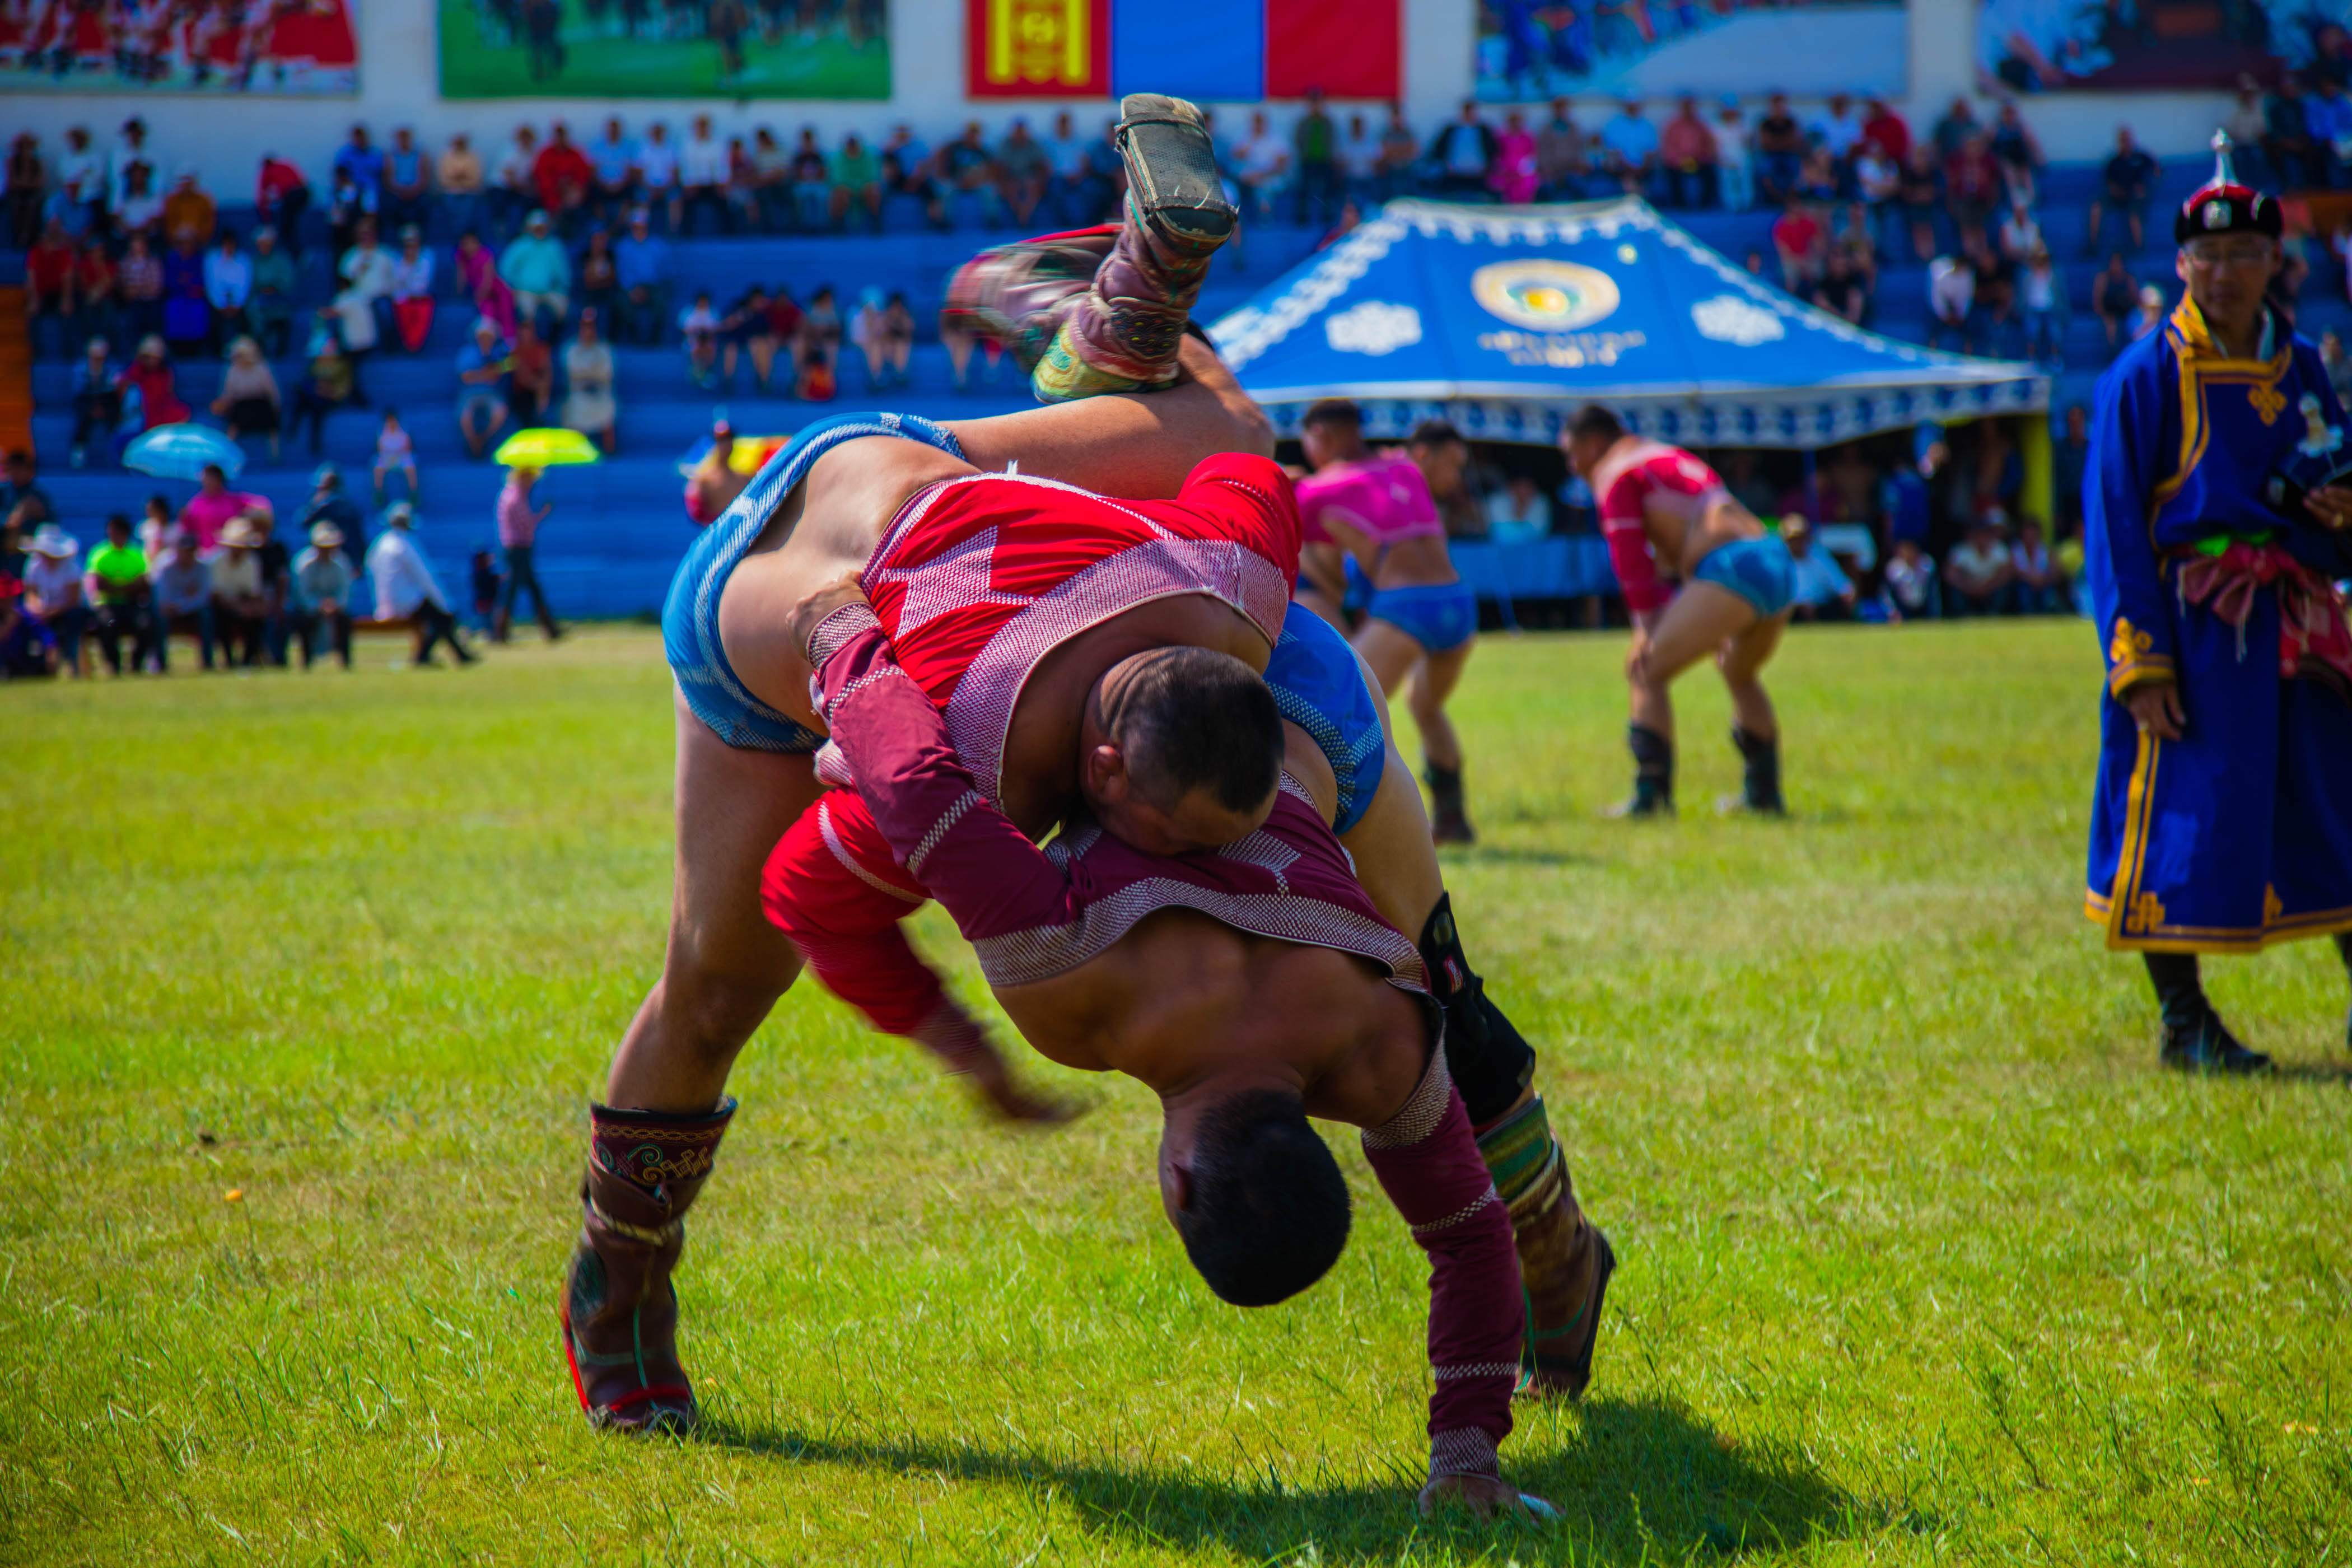 Naadam wrestling